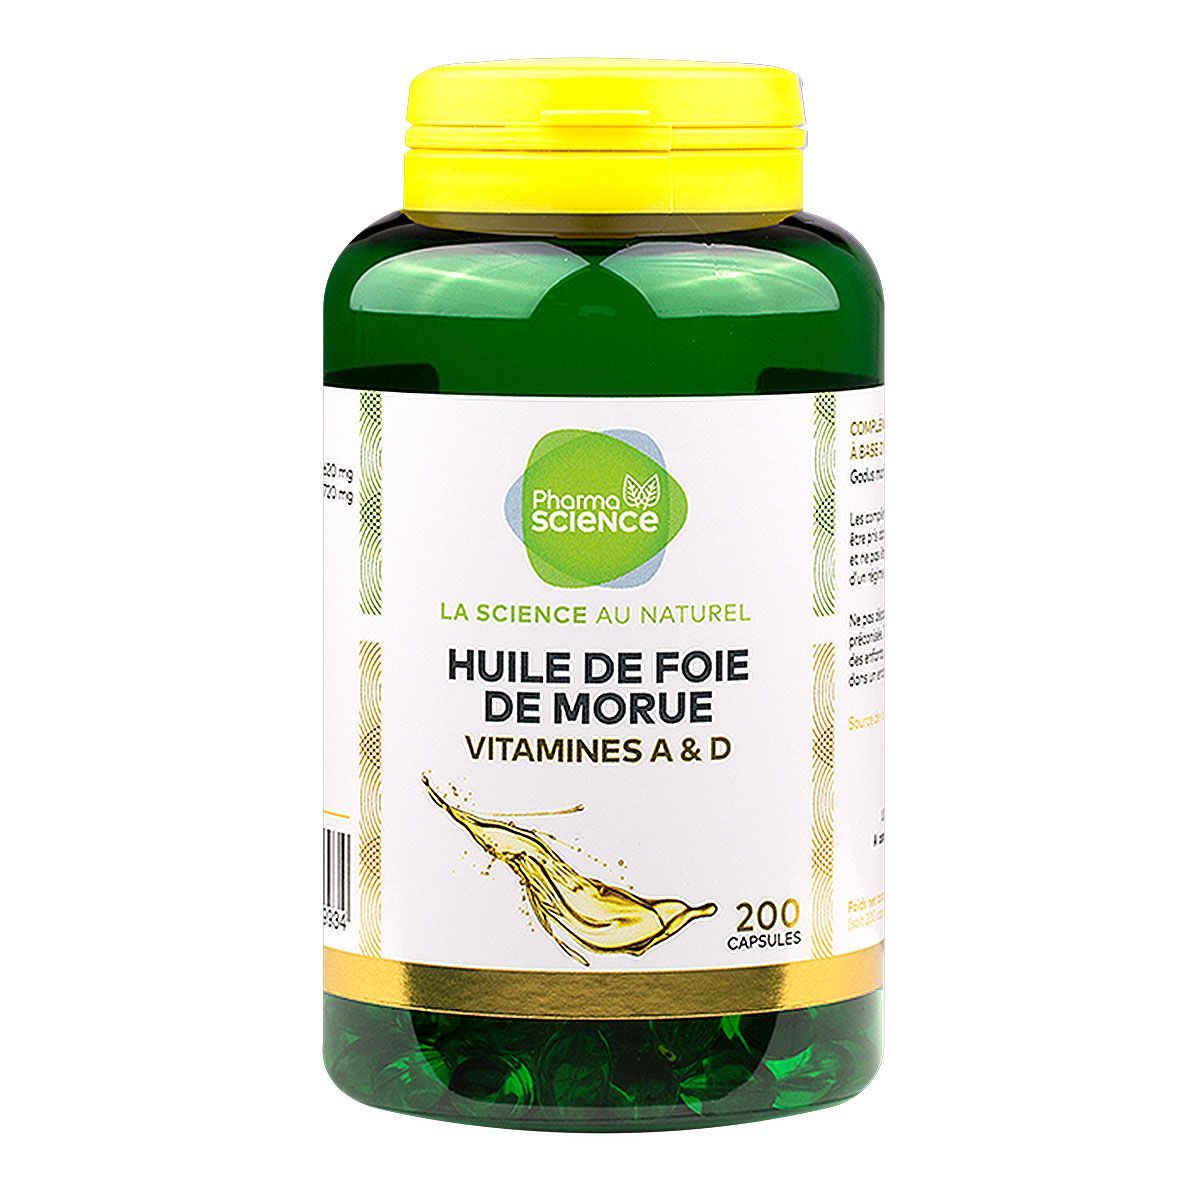 Les capsules d'huile de foie de morue Pharmascience sont des compléments  alimentaires.